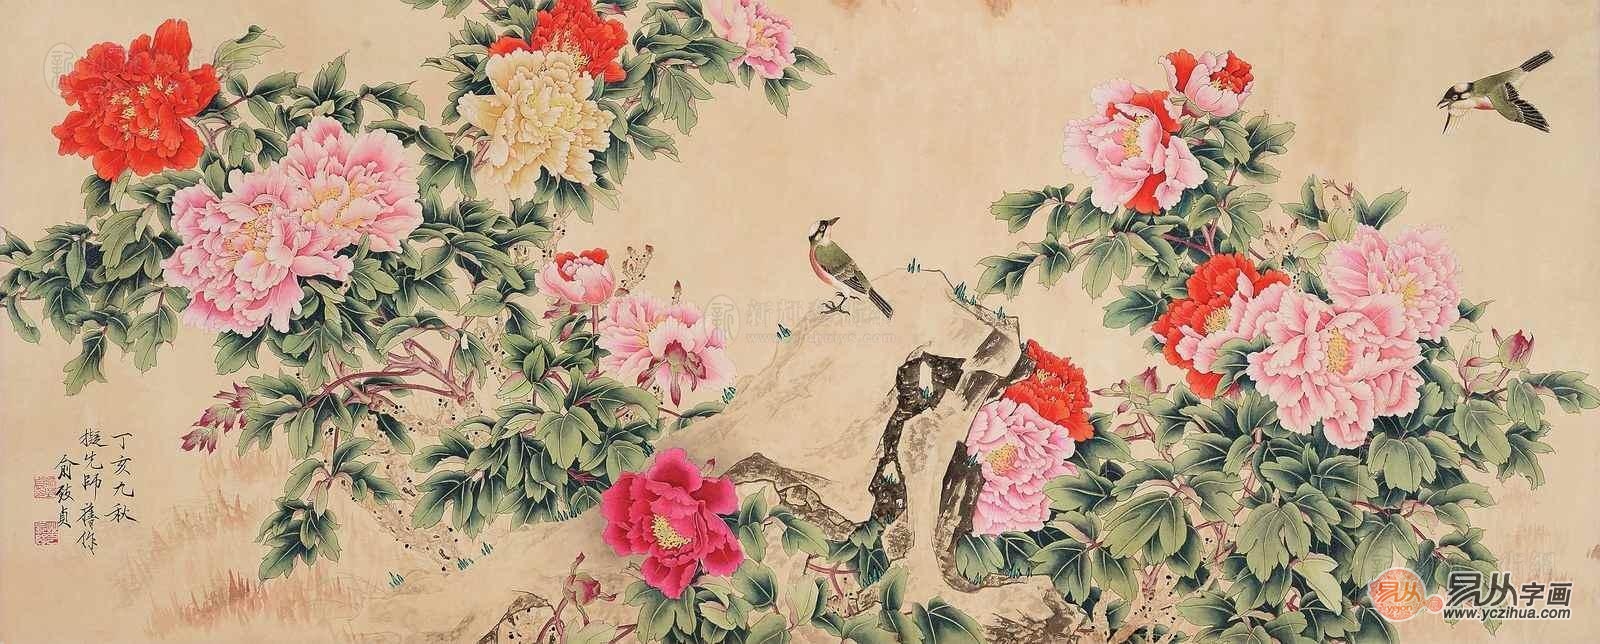 工笔花鸟画大师俞致贞八尺横幅牡丹图《富贵花开》